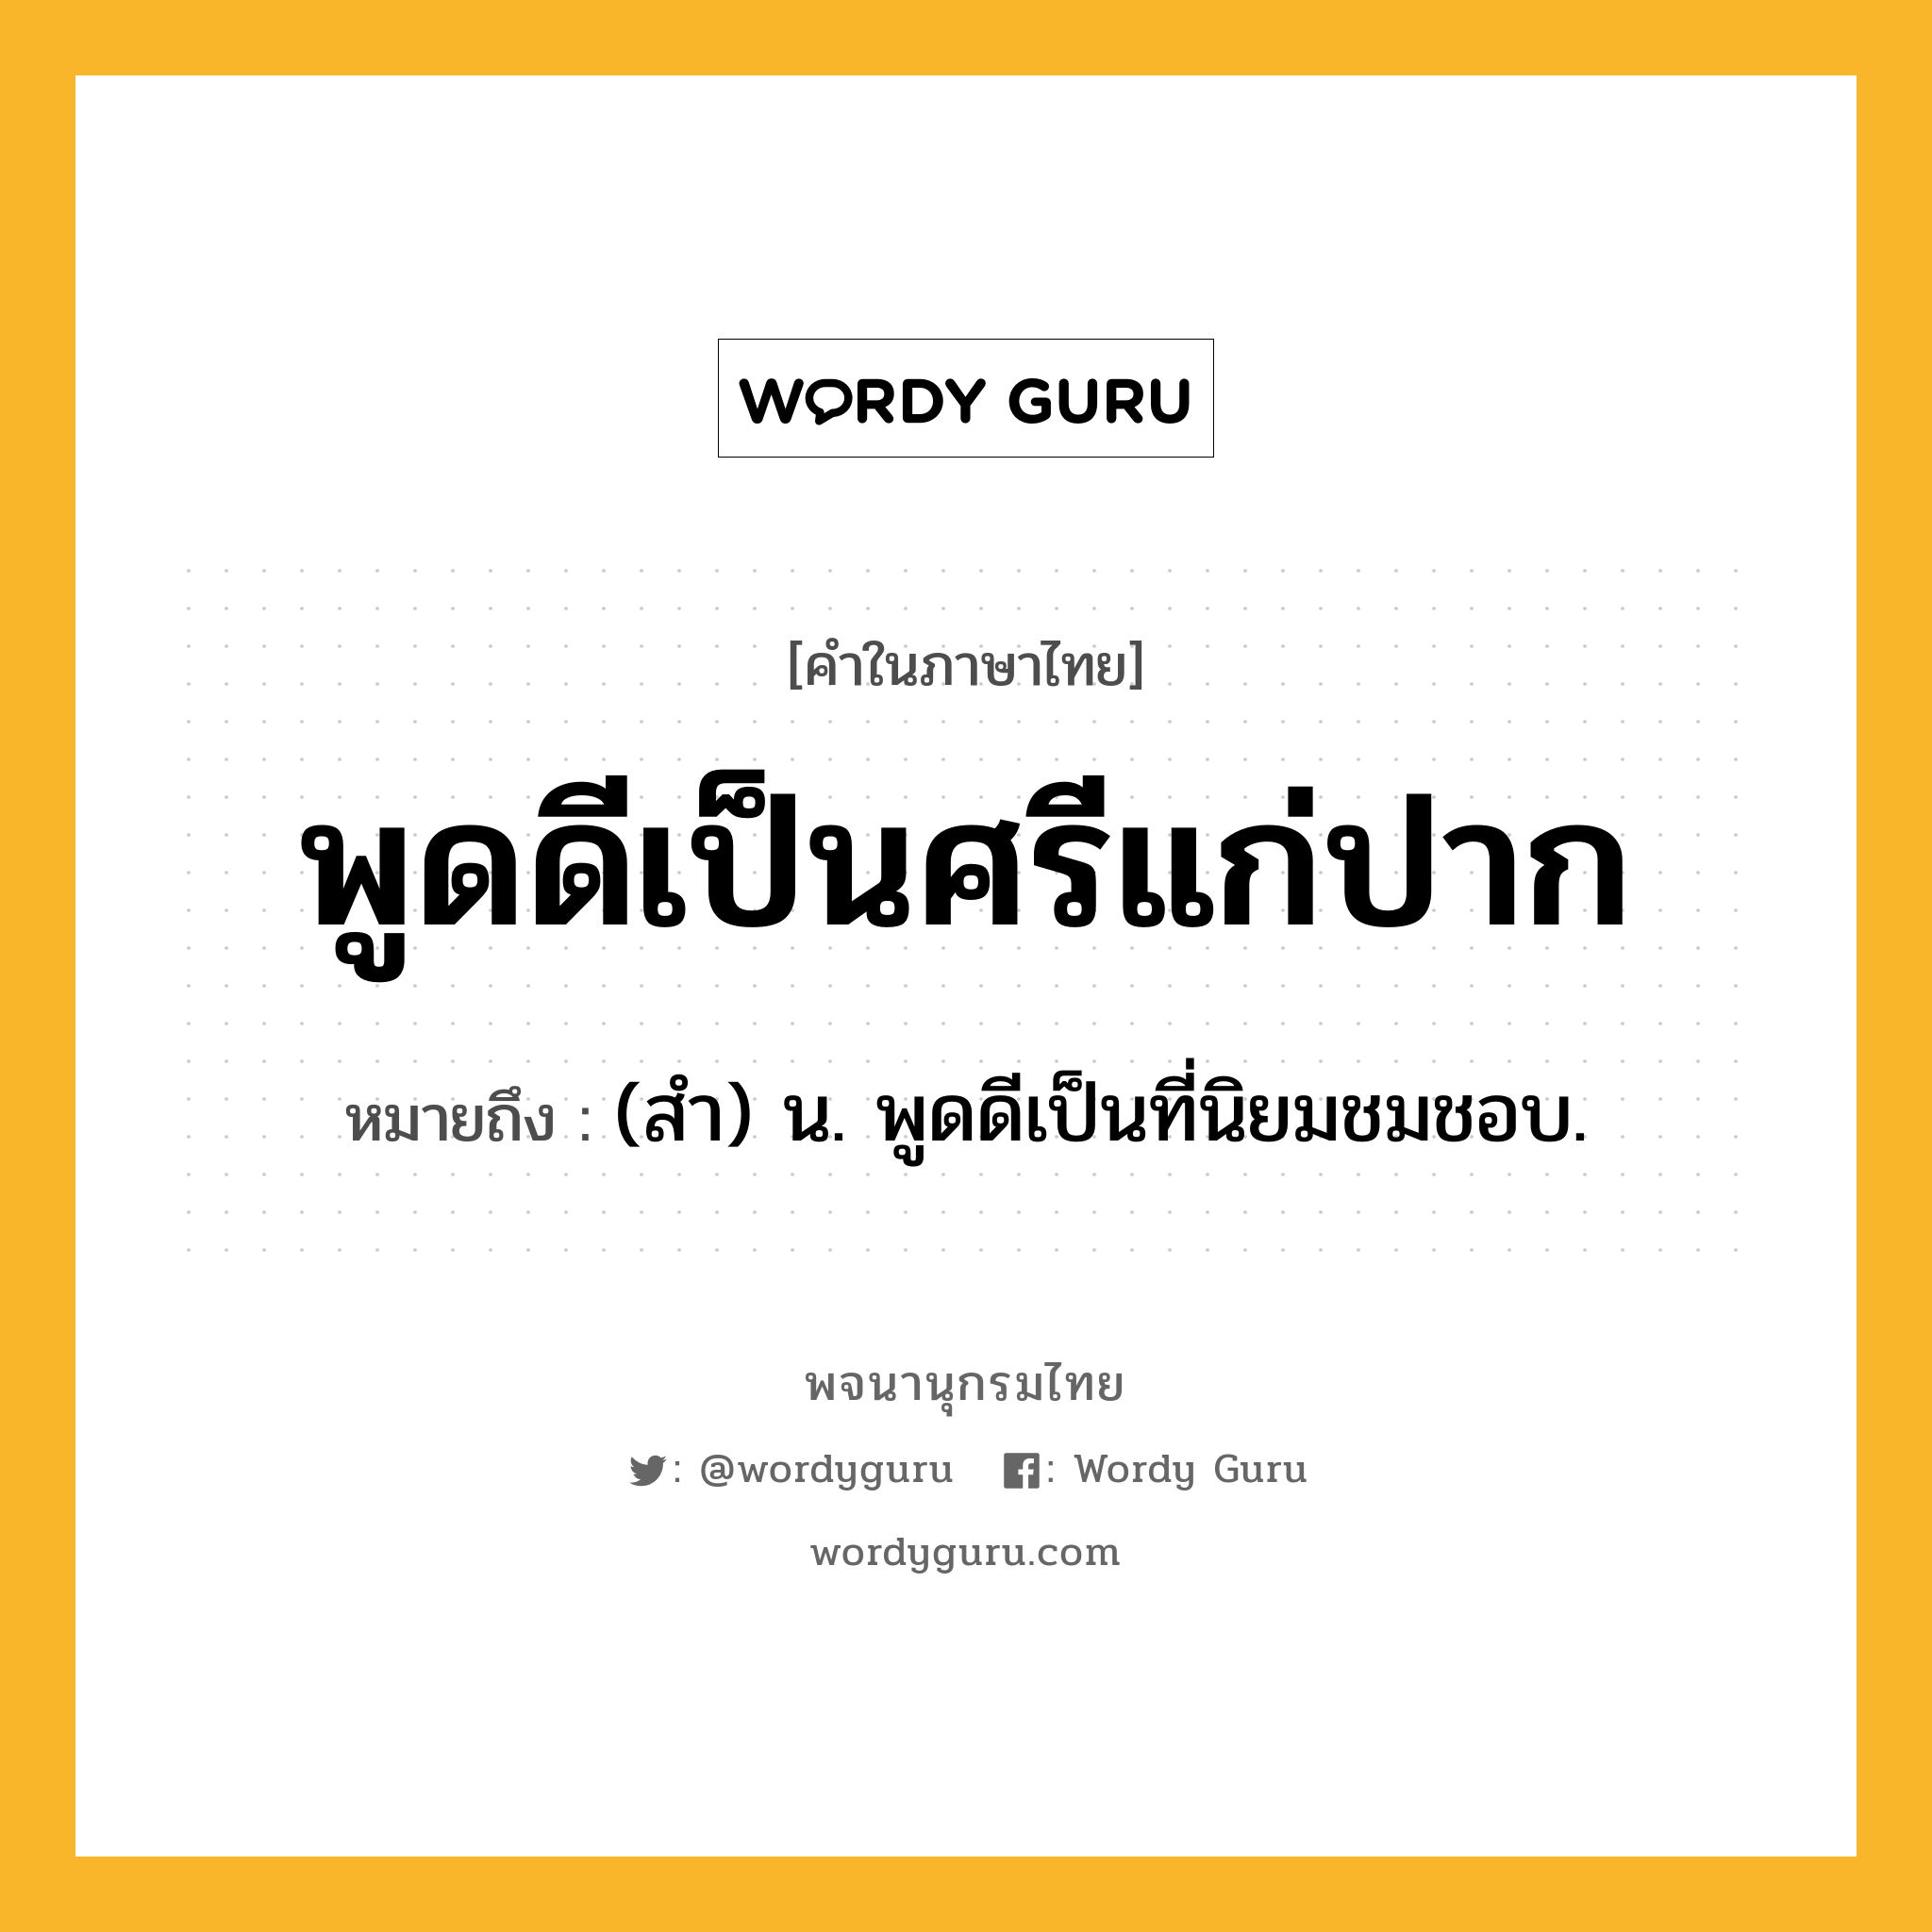 พูดดีเป็นศรีแก่ปาก หมายถึงอะไร?, คำในภาษาไทย พูดดีเป็นศรีแก่ปาก หมายถึง (สํา) น. พูดดีเป็นที่นิยมชมชอบ.